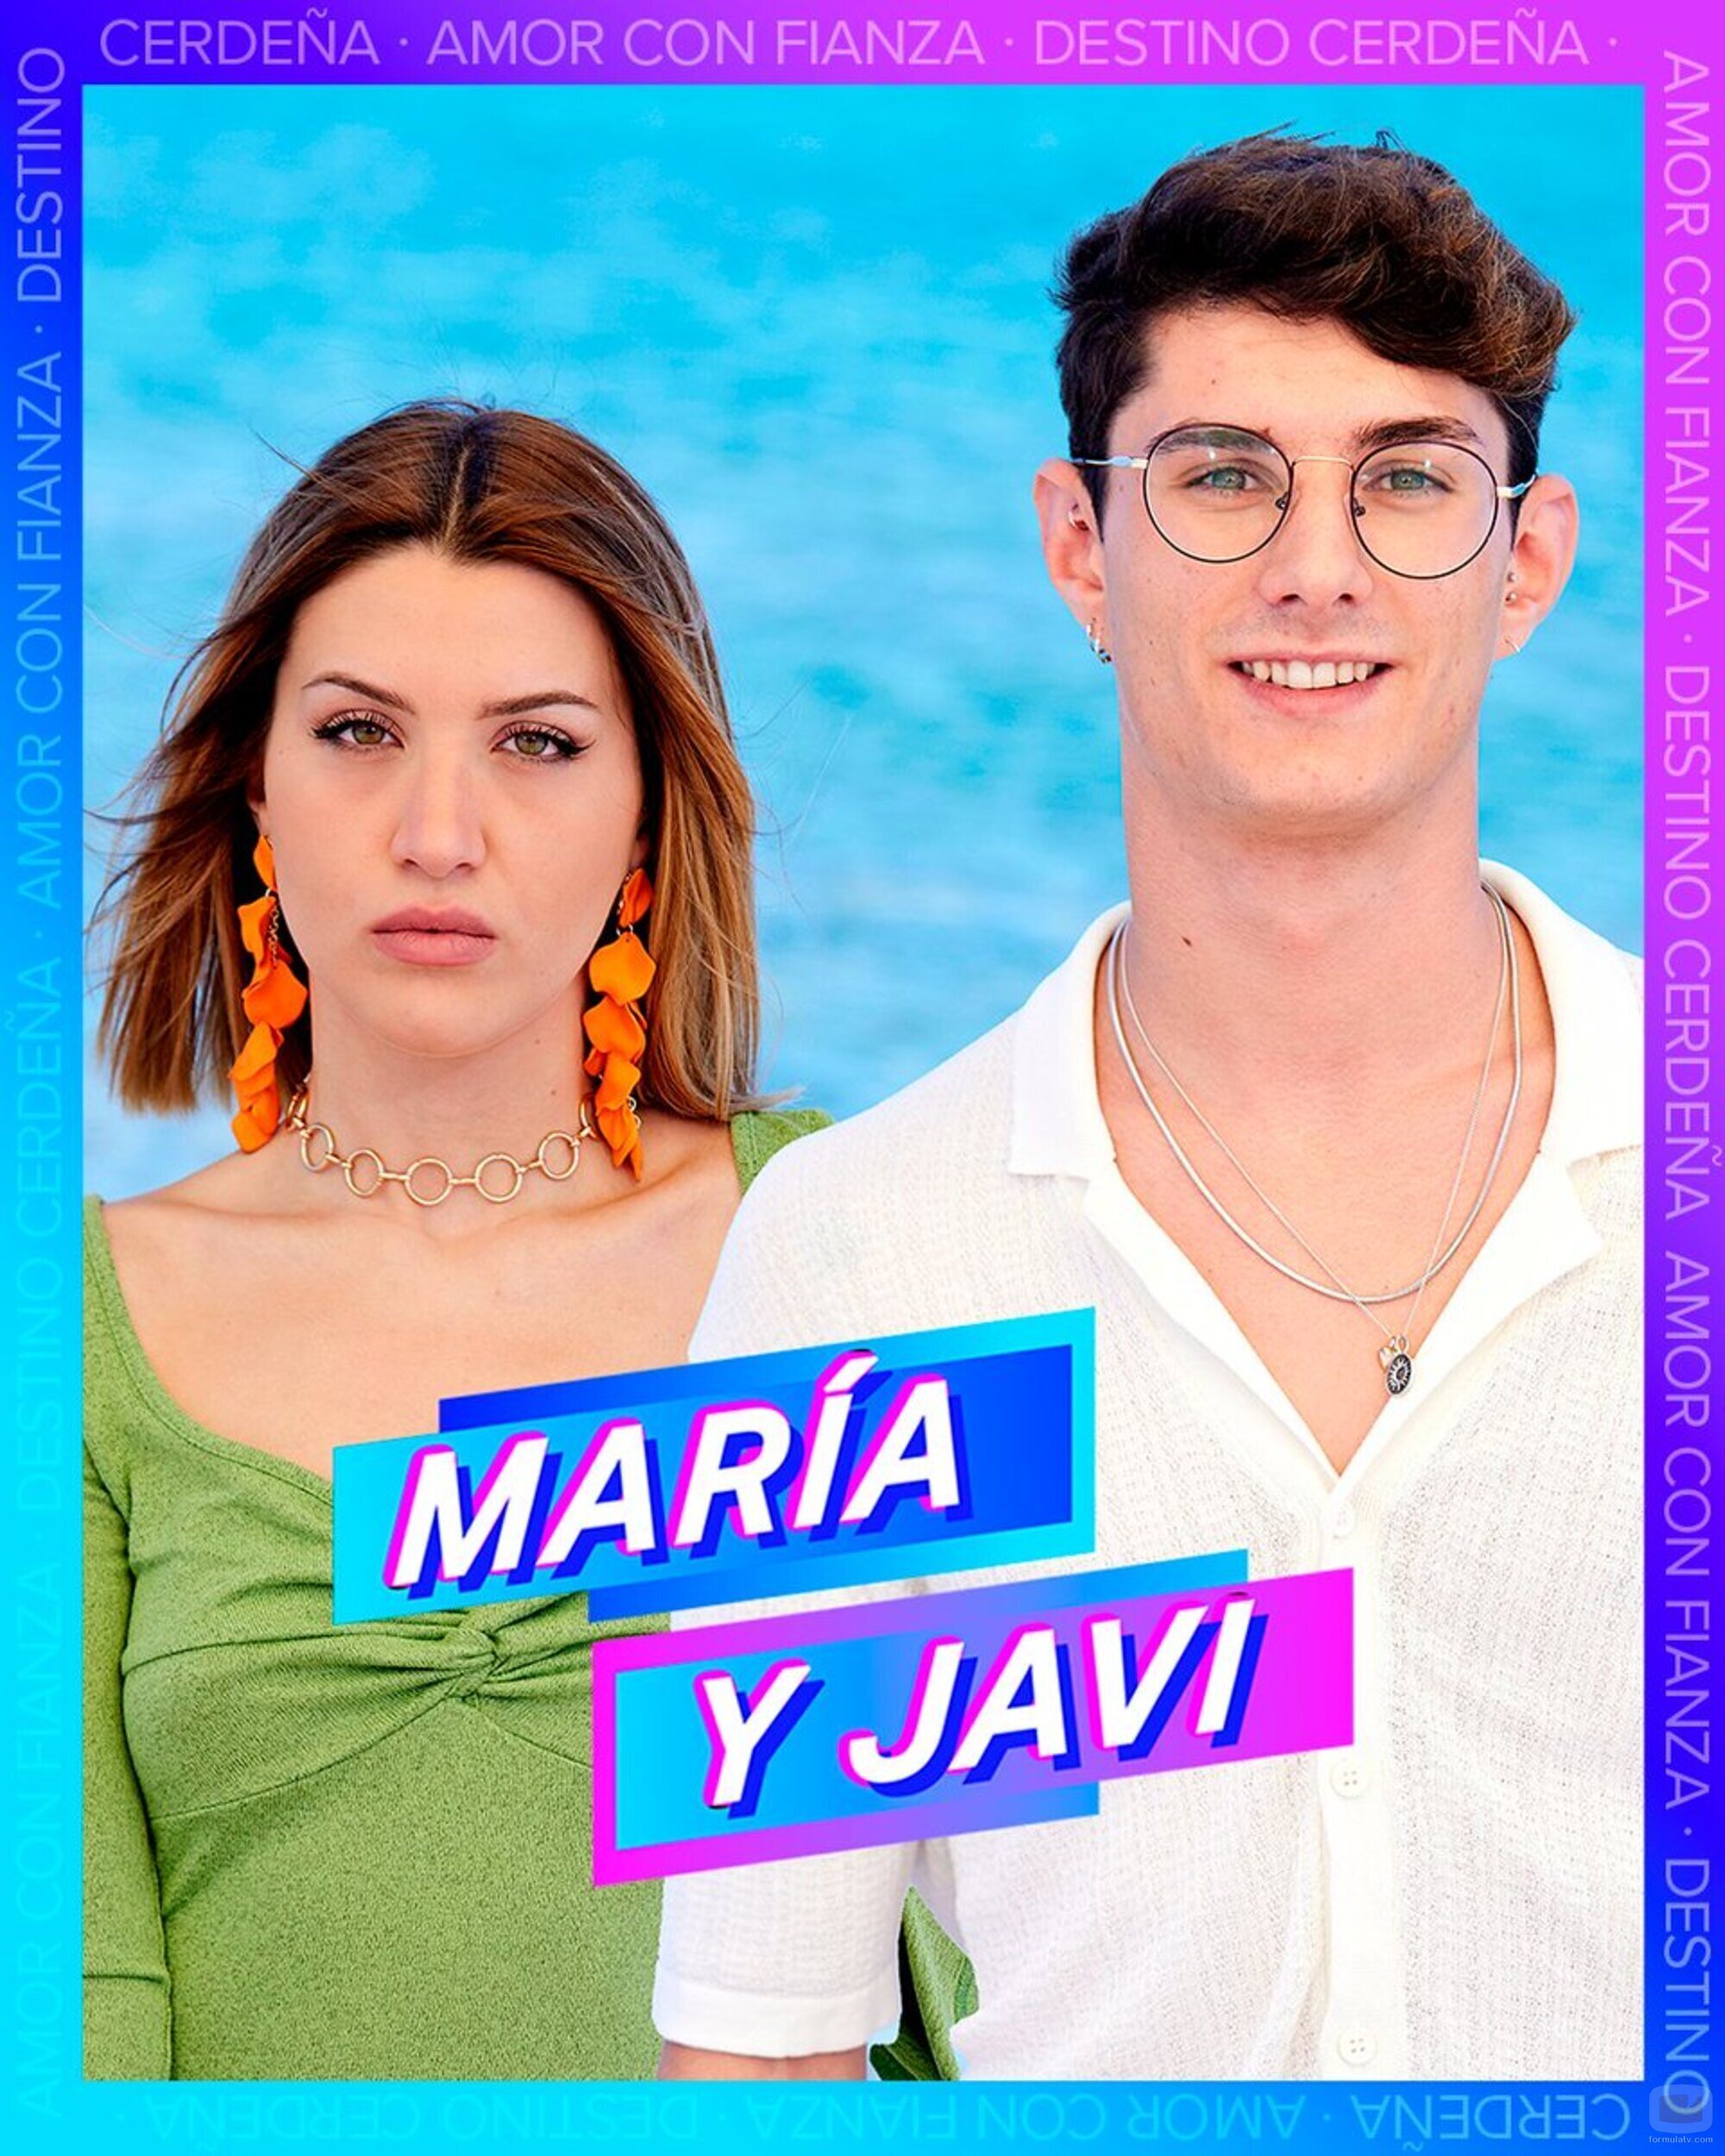 María y Javi, concursantes de 'Amor con fianza 2'